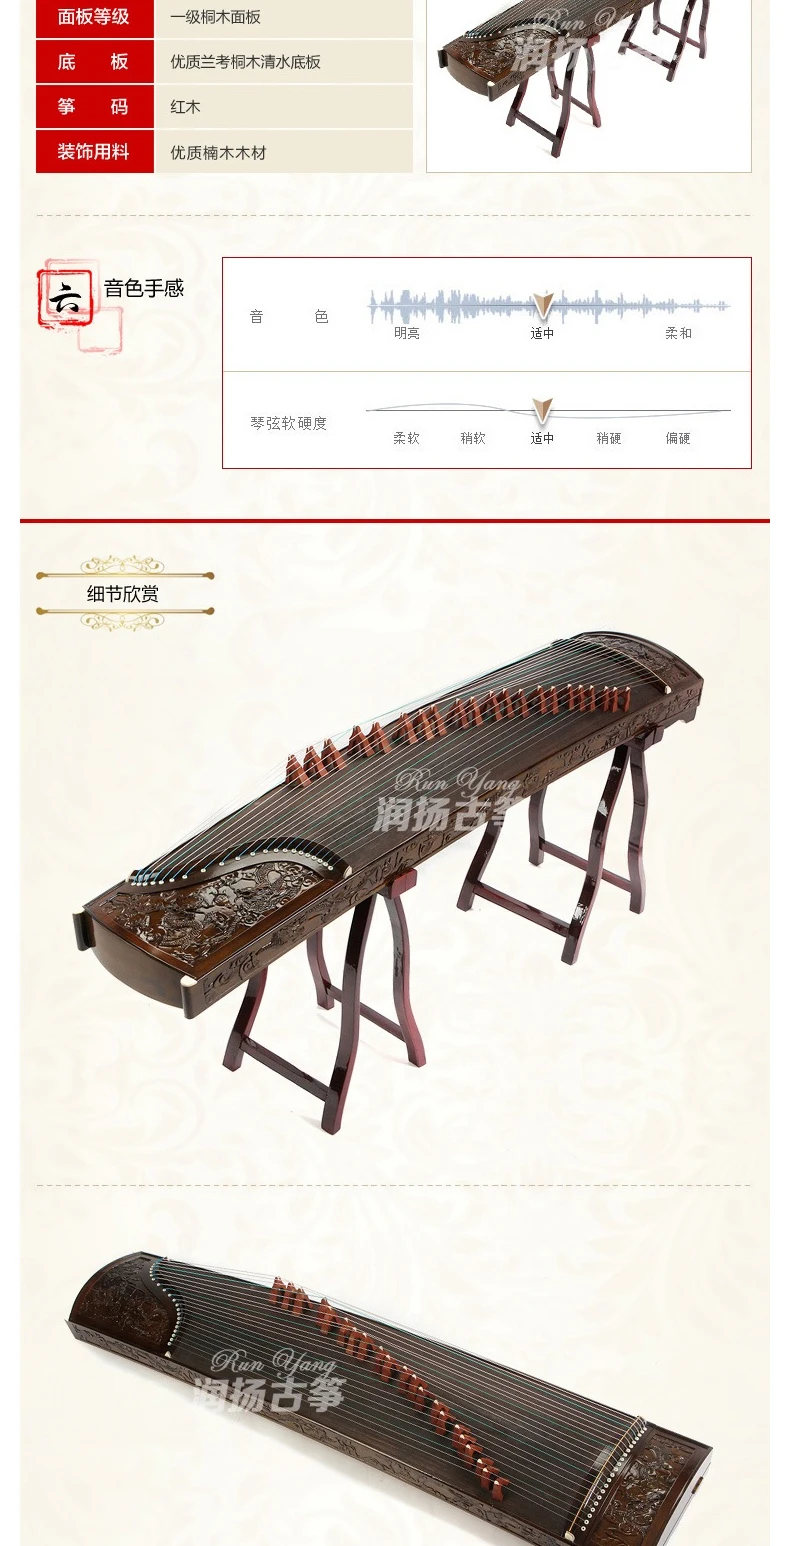 Высокое качество Профессиональный гучжэн мастер ручной работы Phoebe 9 Дракон твердой древесины играть guzheng китайский 21 струны Zither